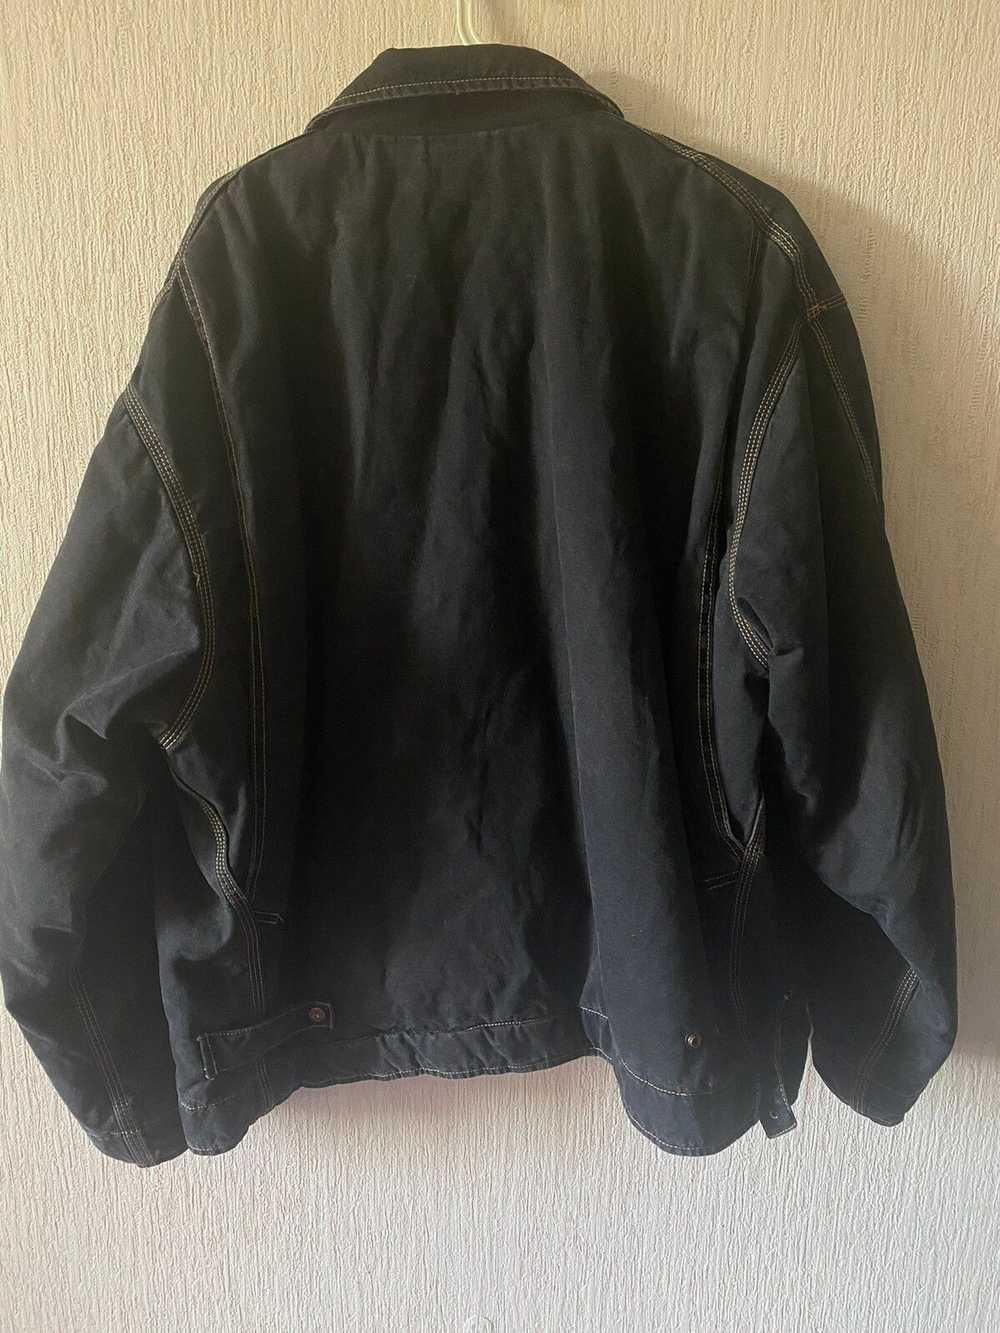 1990x Clothing × Diesel × Retro Jacket Vintage Re… - image 2